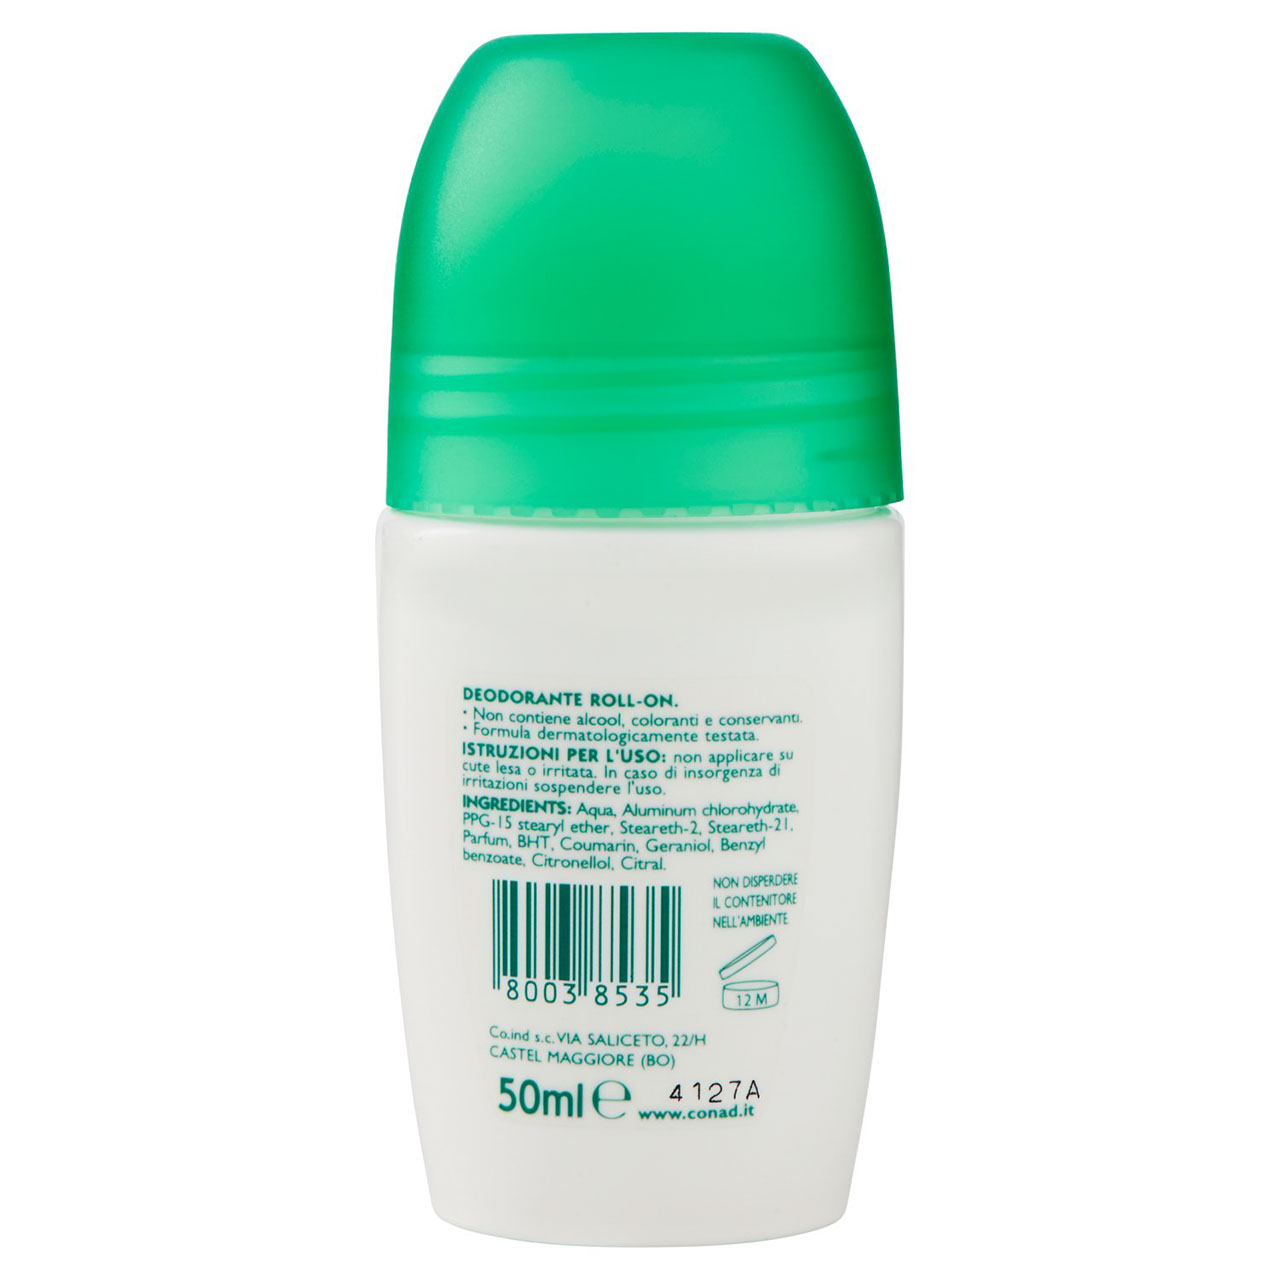 CONAD Deodorante Roll-on Talco 50 ml